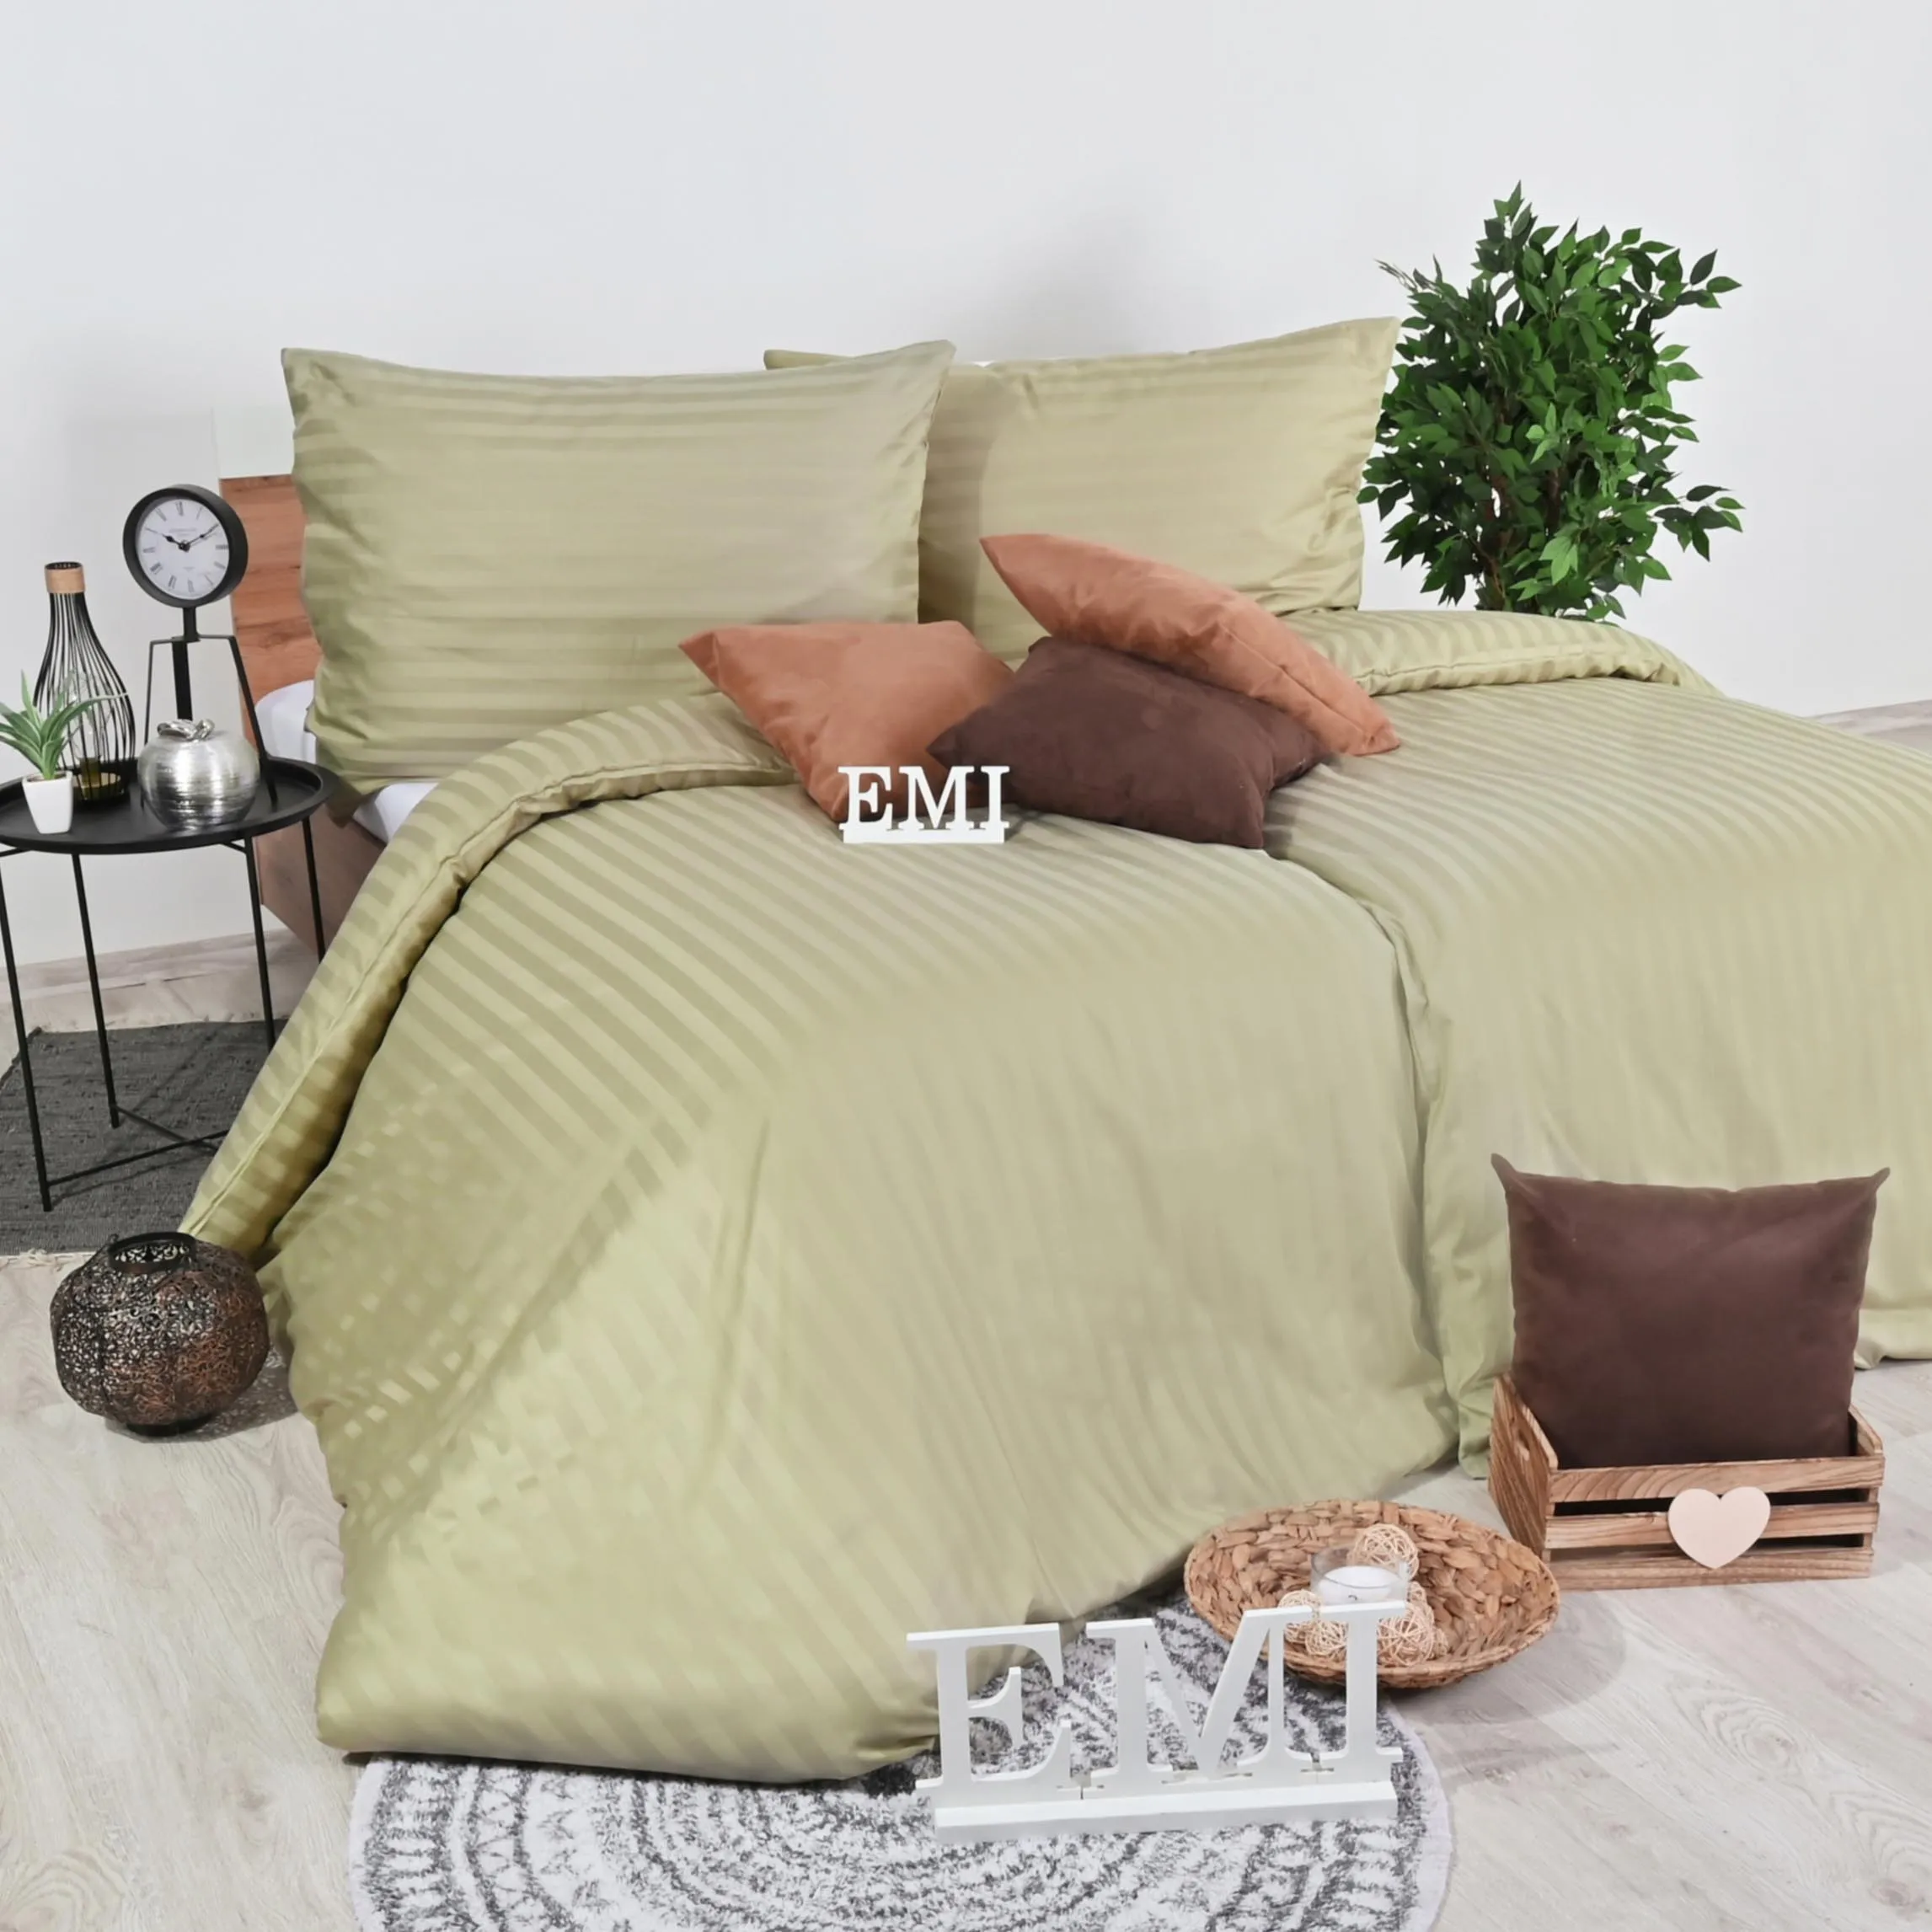 EMI Obliečky damaškové hnedo-olivové 1×1 set, posteľné obliečky